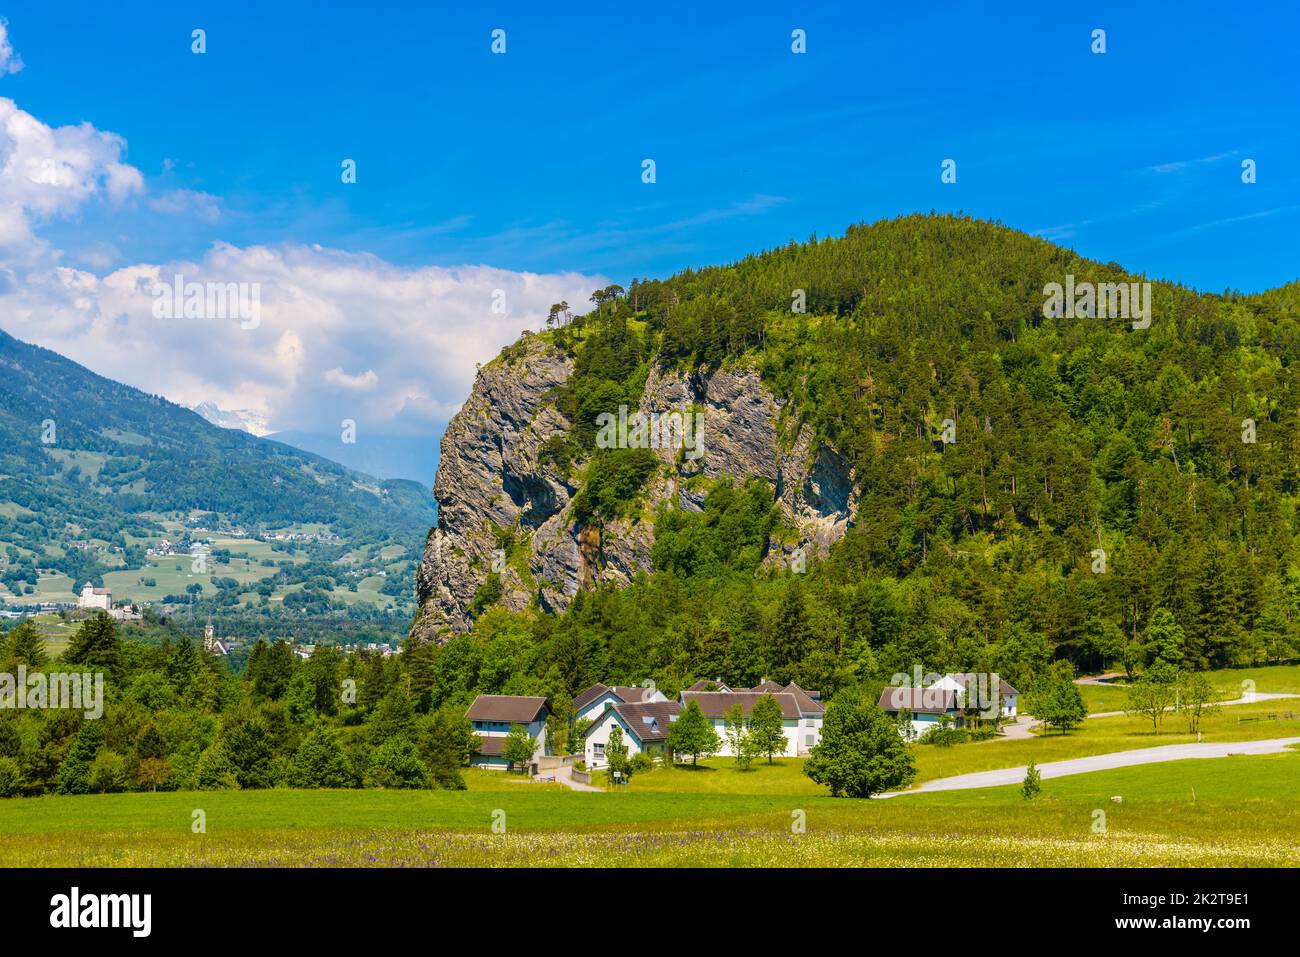 Hills mountains with forest in Alps, Vaduz, Oberland, Liechtenst Stock Photo